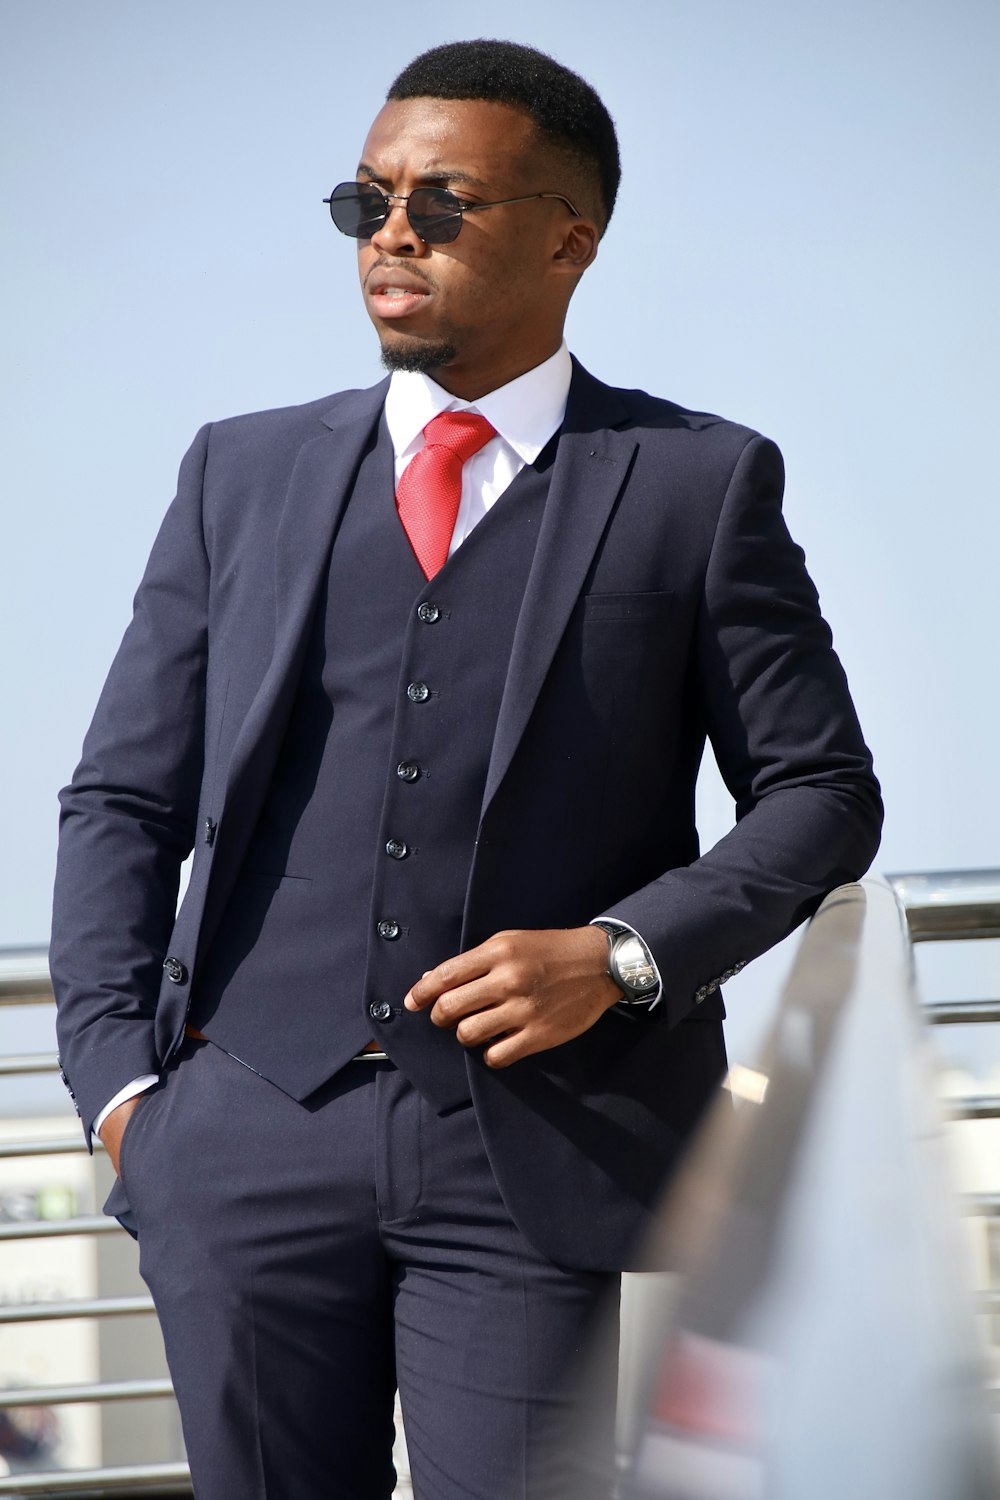 Terno moderno e elegante de homem com gravata vermelha e close up